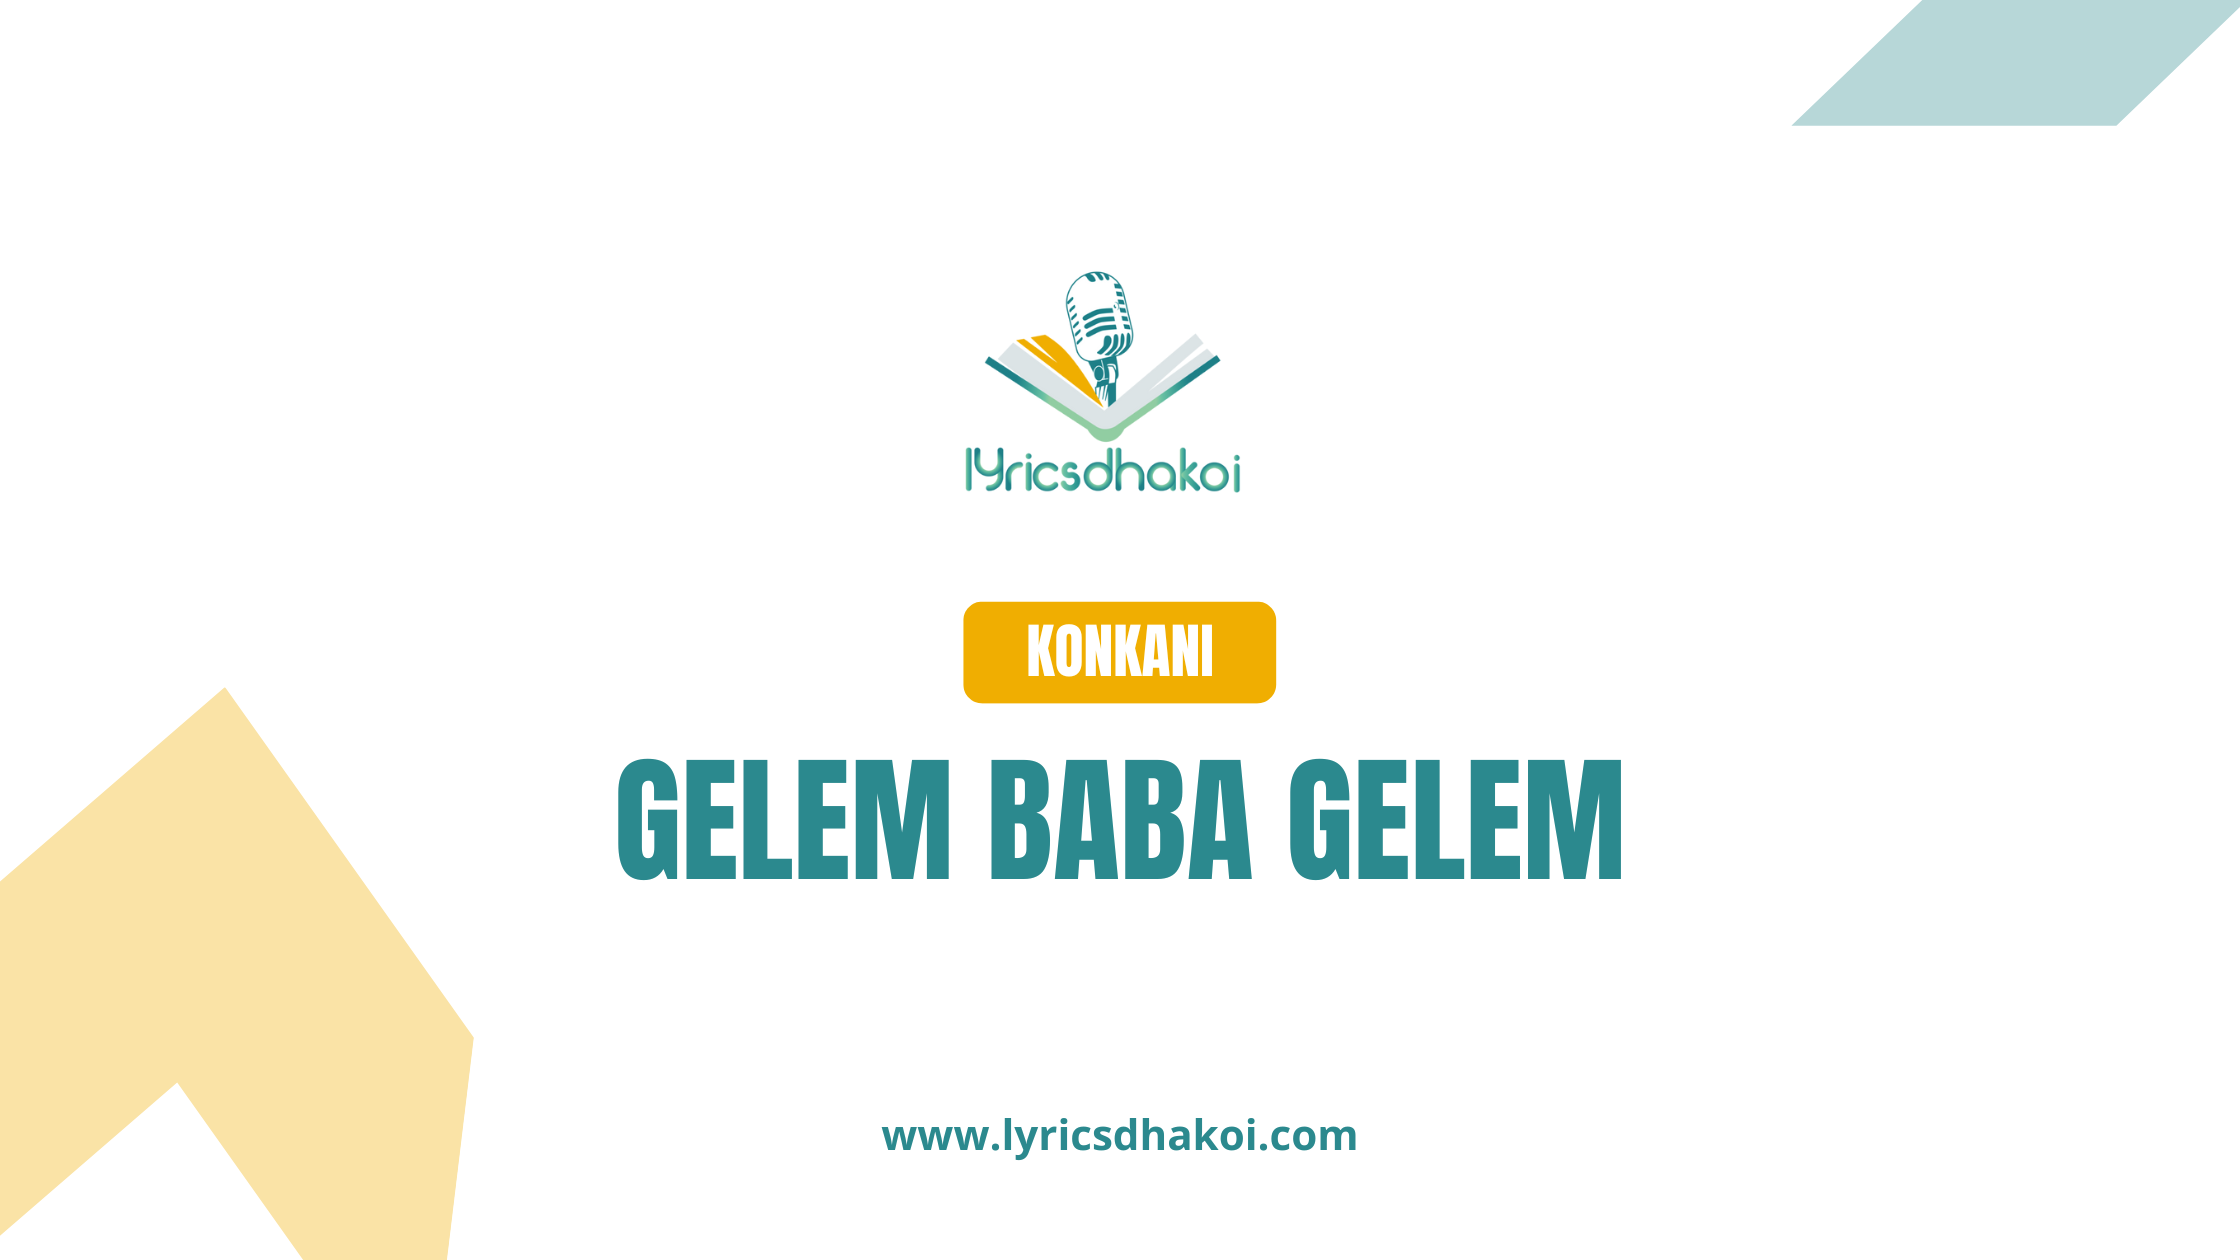 Gelem Baba Gelem Konkani Lyrics for Karaoke Online - LyricsDhakoi.com